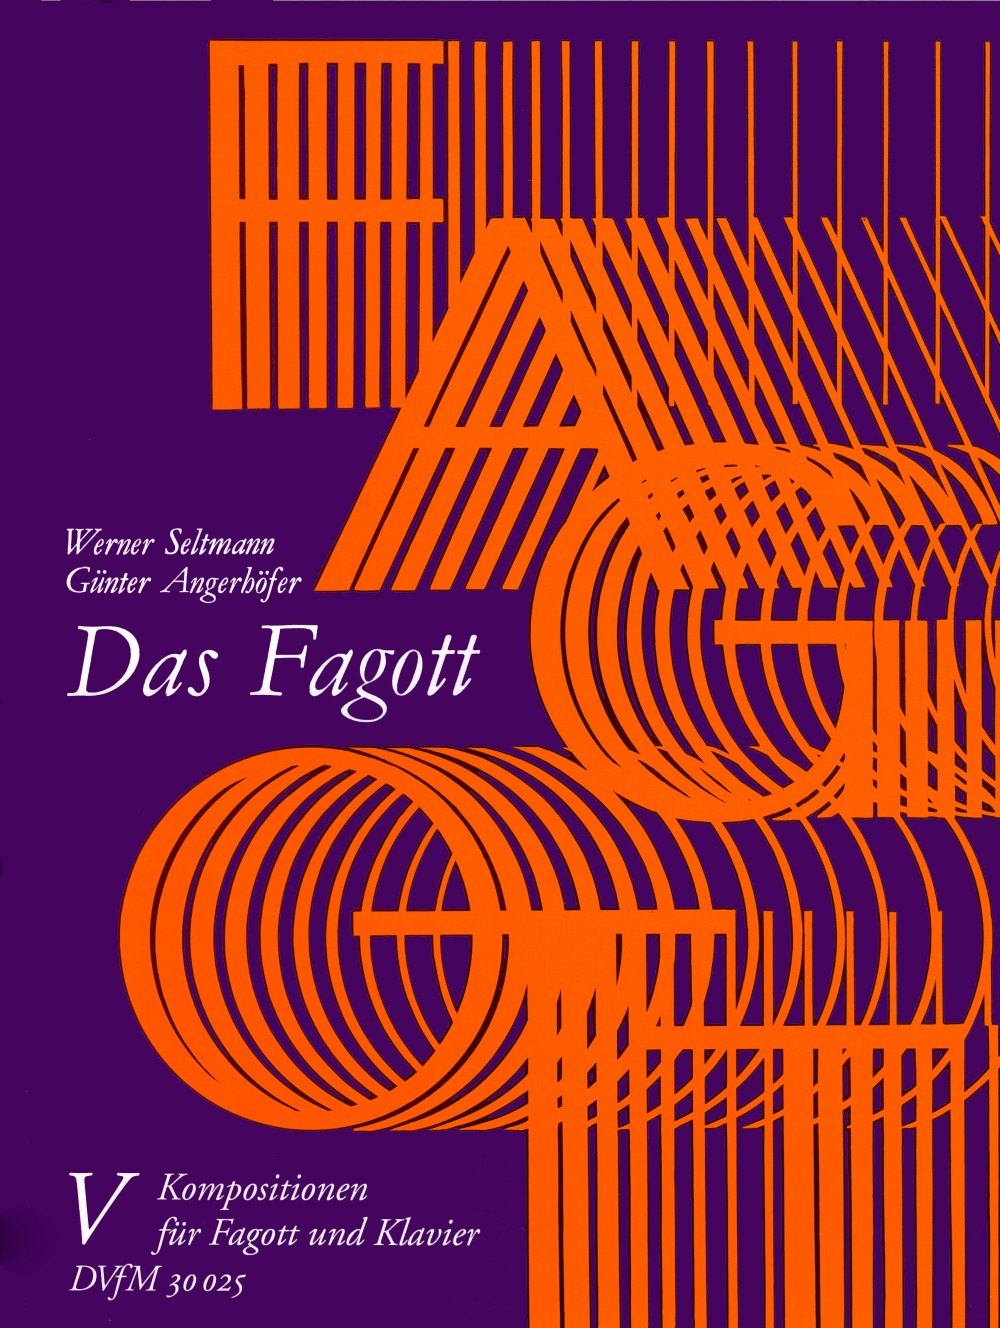 Das Fagott, Band 5 (SELTMANN WERNER / ANGERHOFER G)